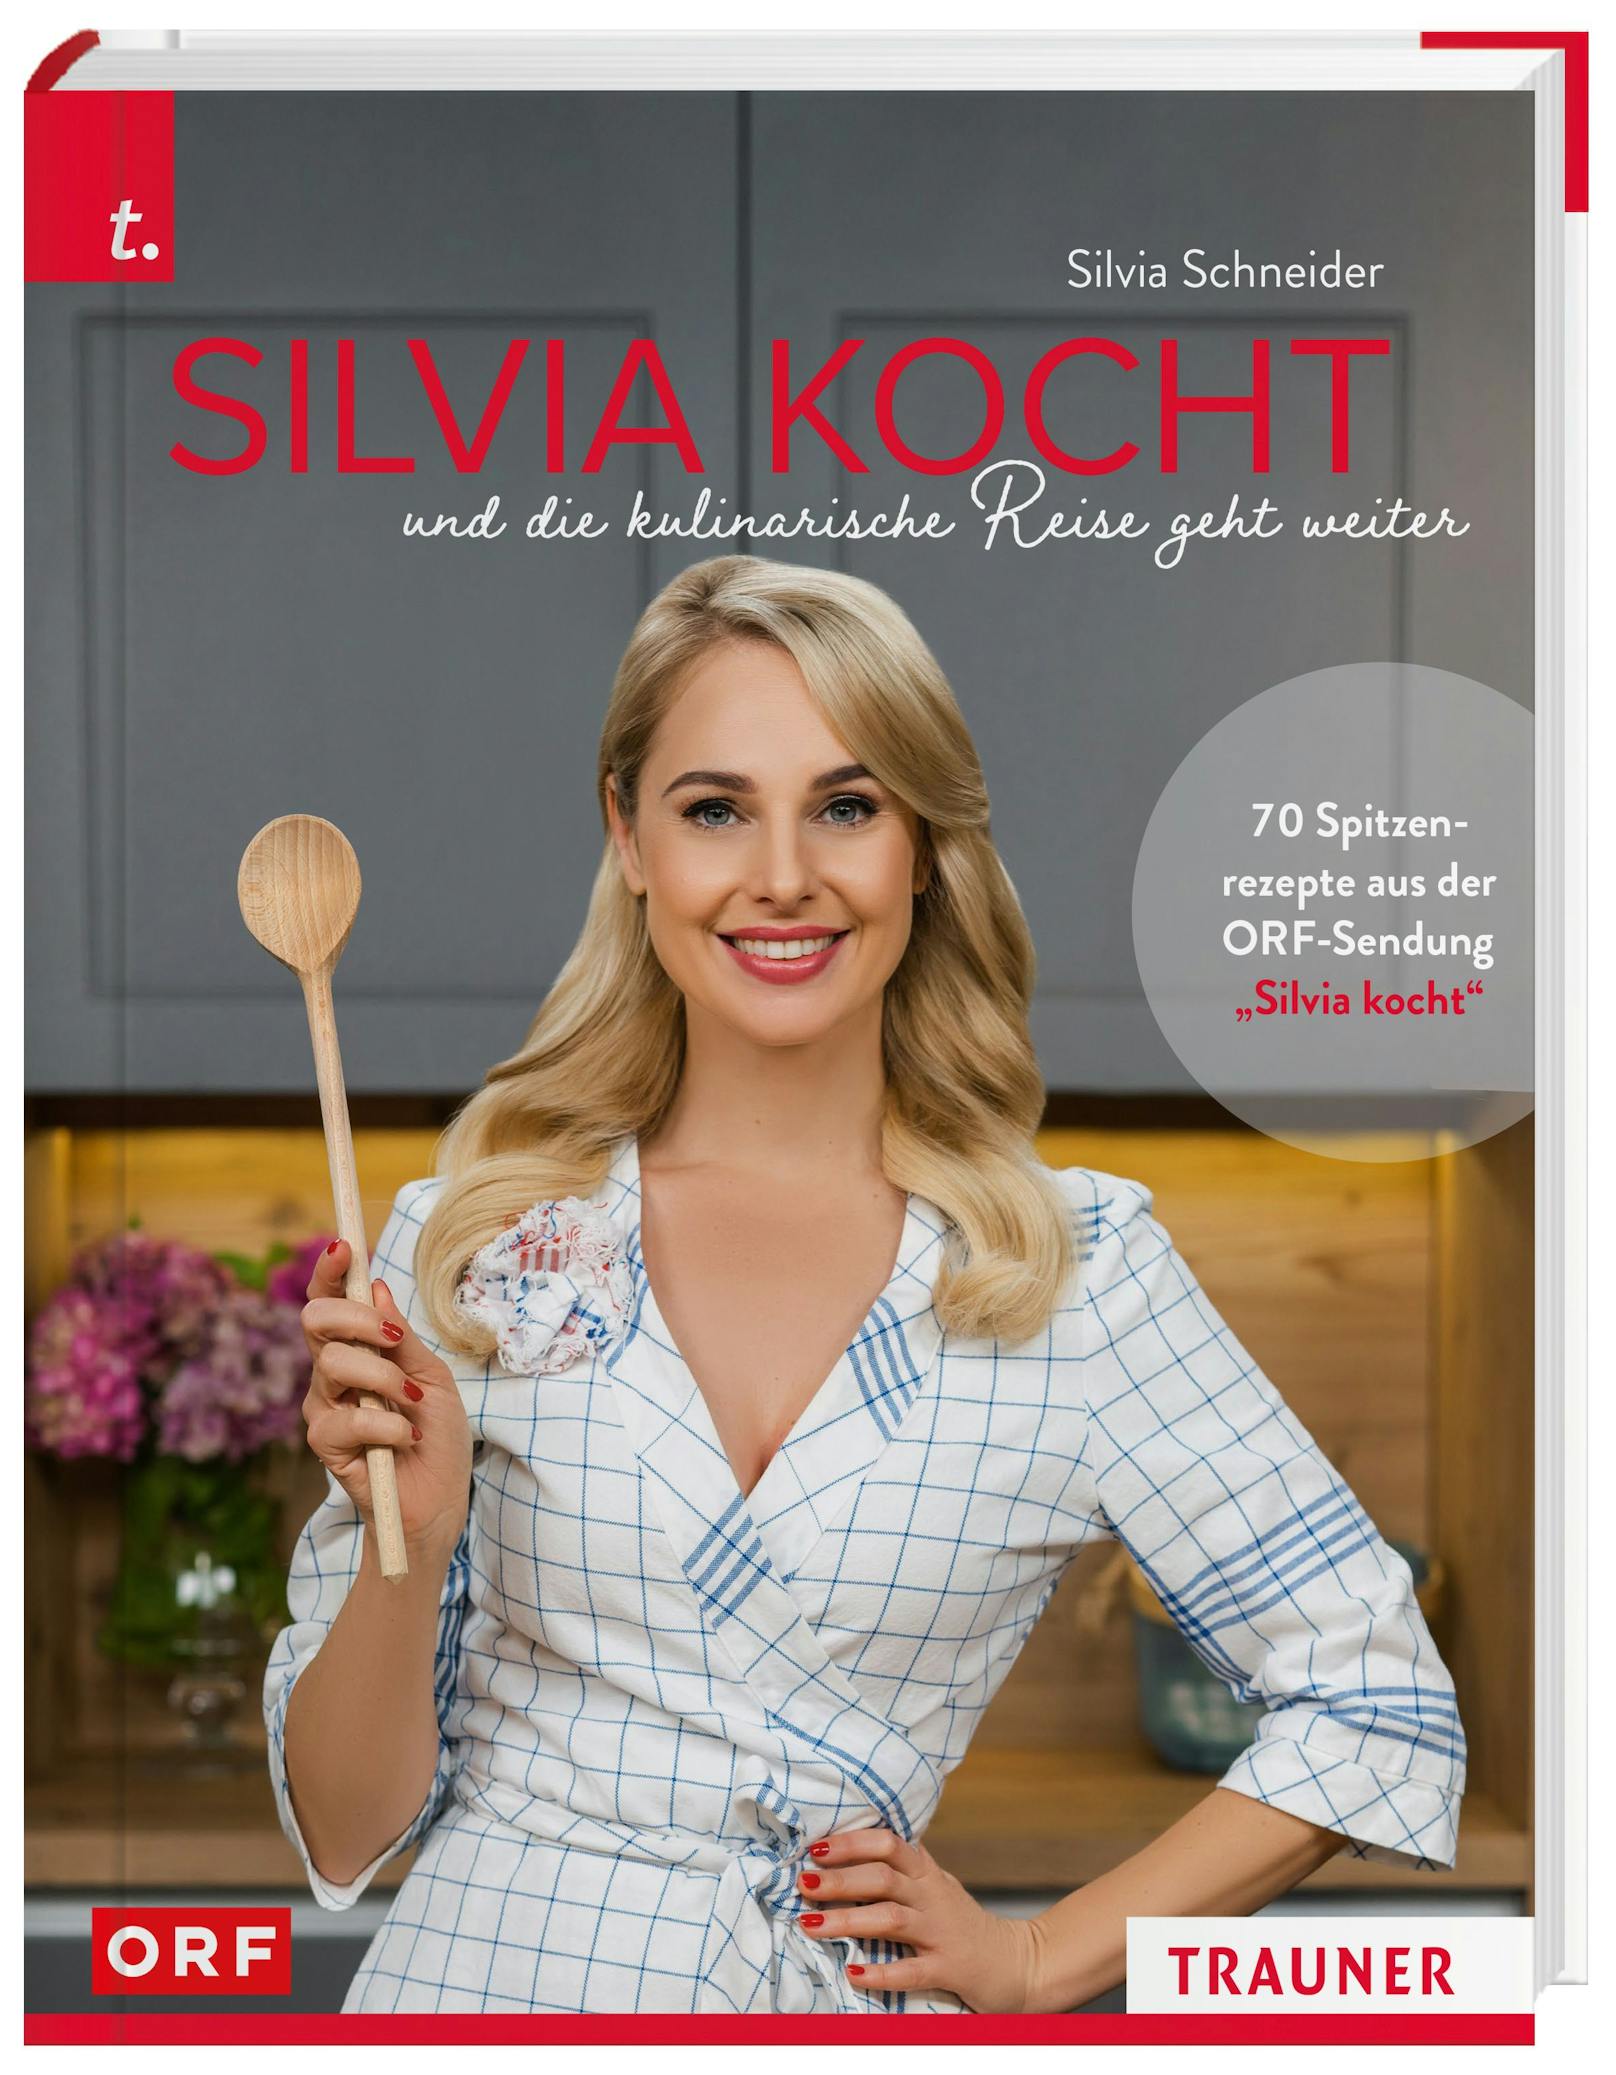 Silvia Schneider präsentiert ihr neues Kochbuch "Silvia kocht"